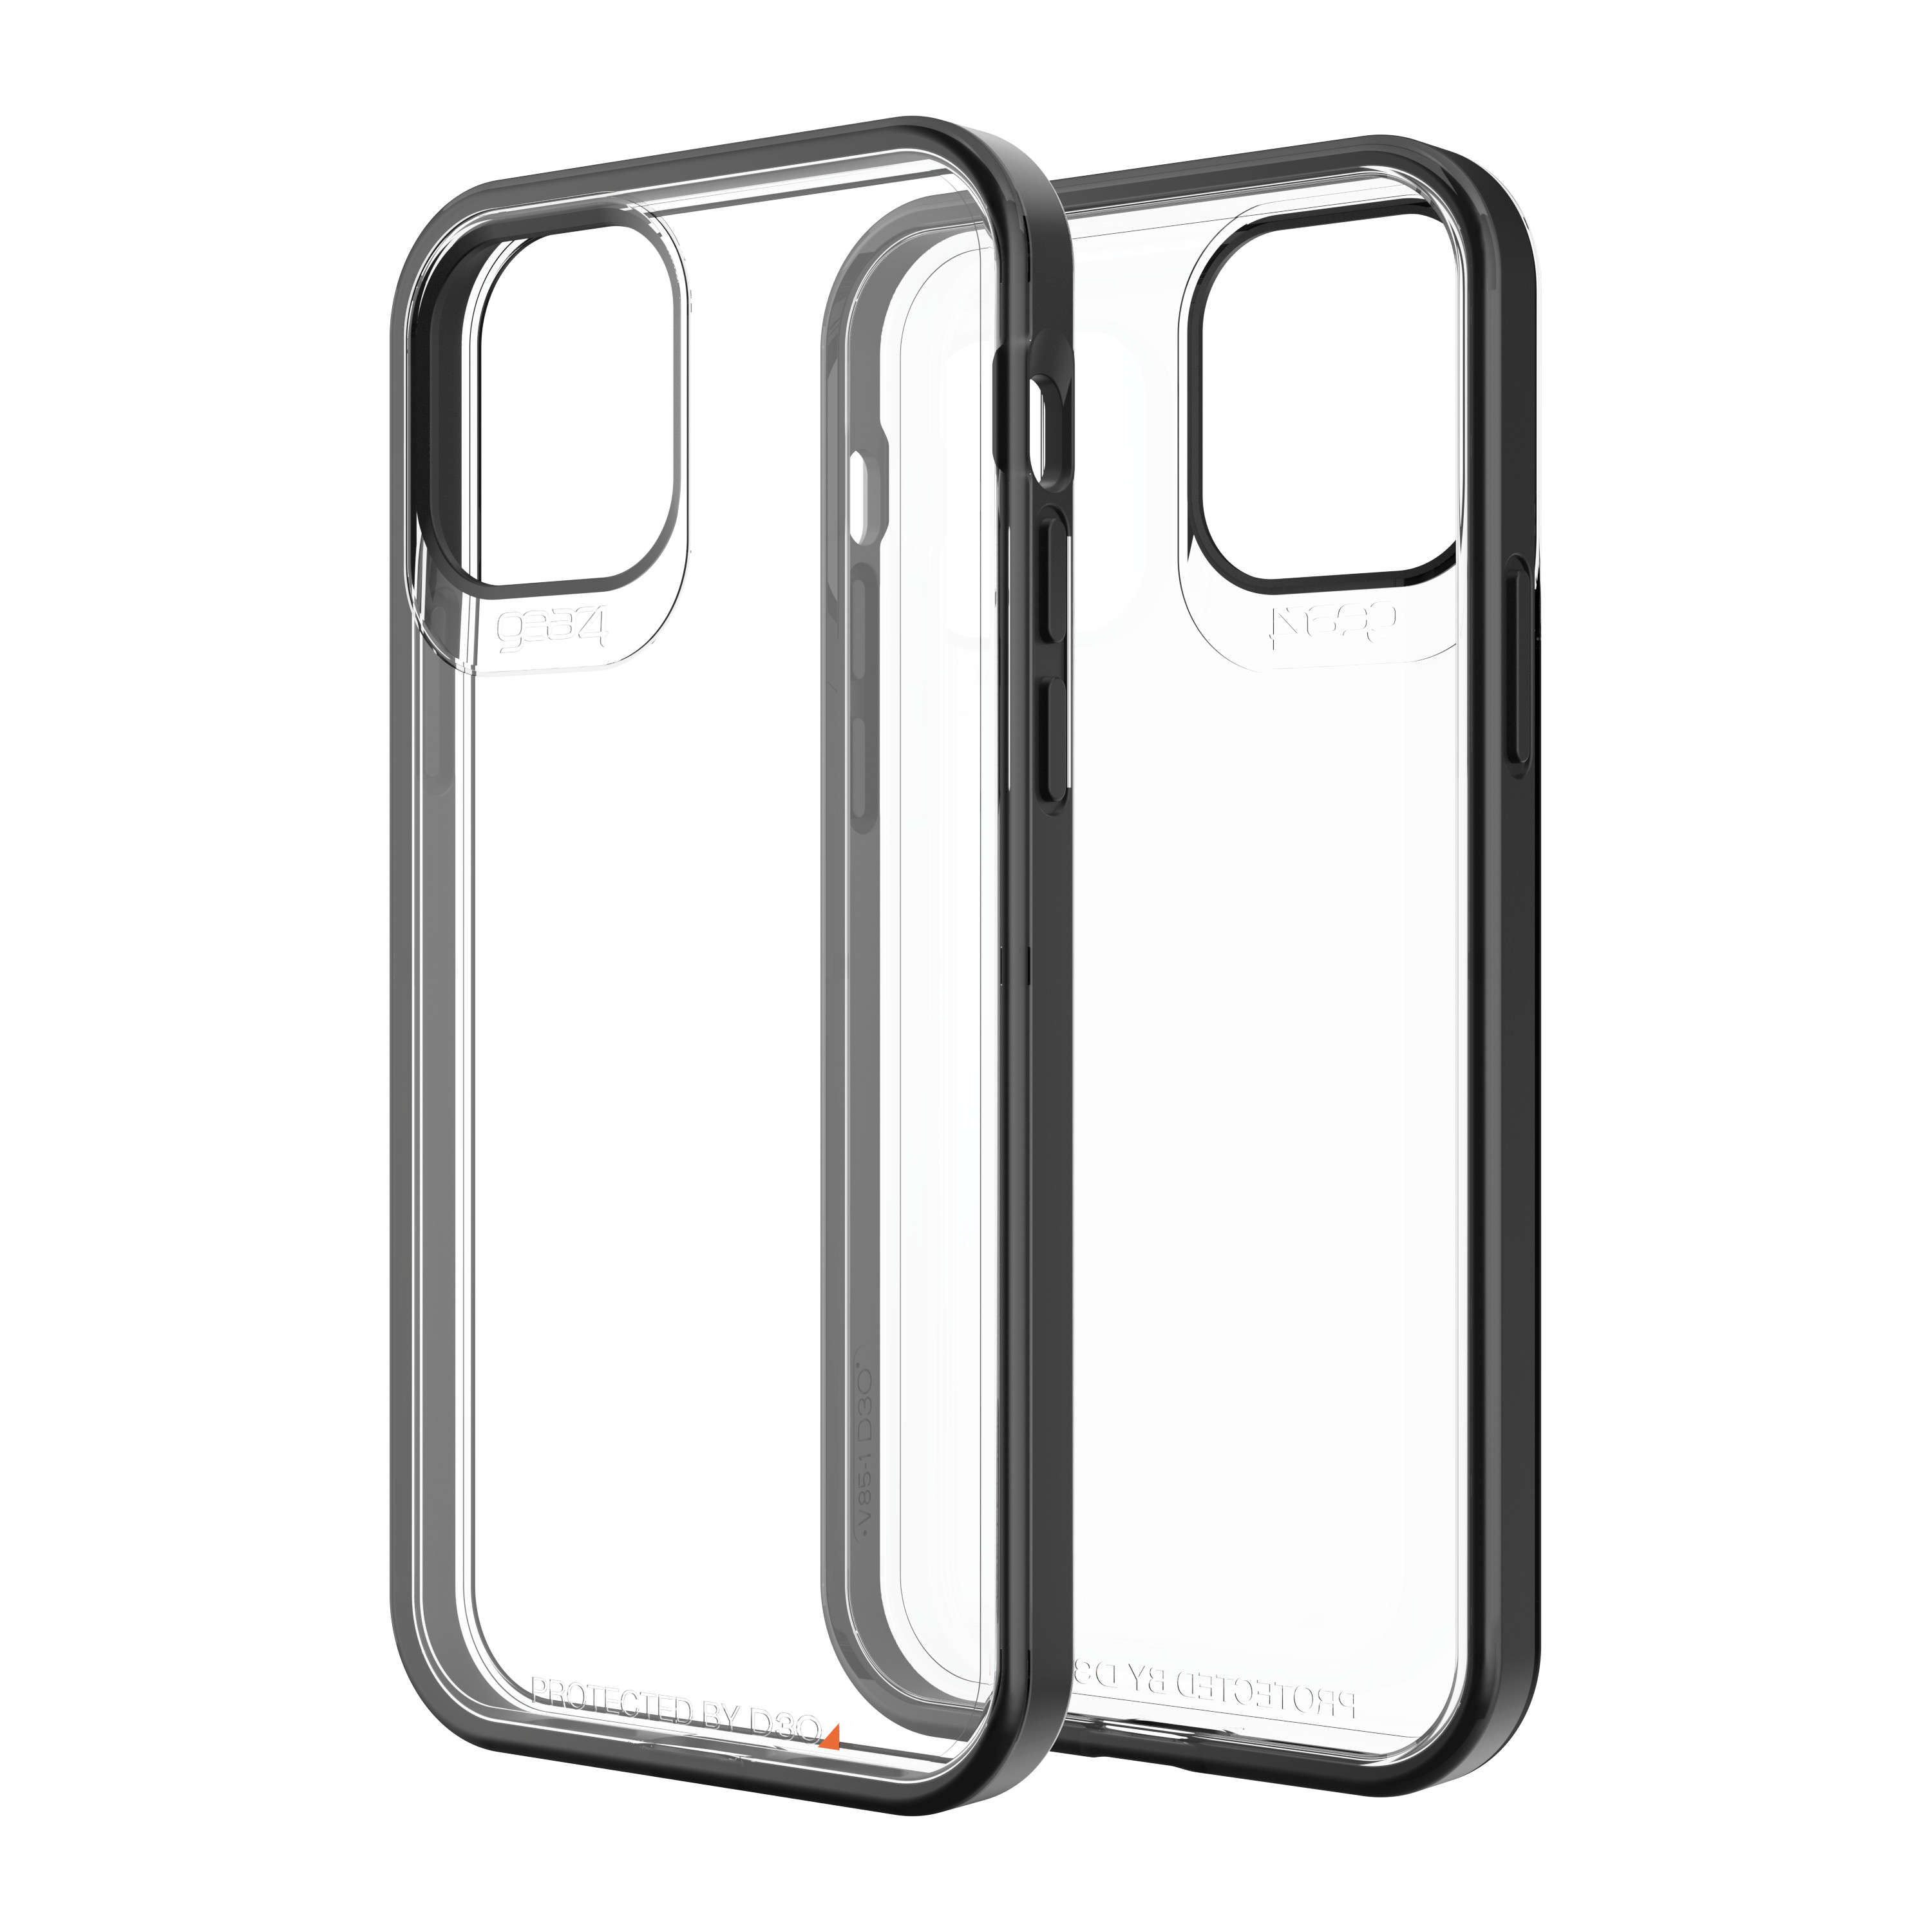 Ốp lưng chống sốc Gear4 D3O Hackney 5G iPhone - Công nghệ chống sốc độc quyền D3O, kháng khuẩn, tương thích tốt với sóng 5G - Hàng chính hãng